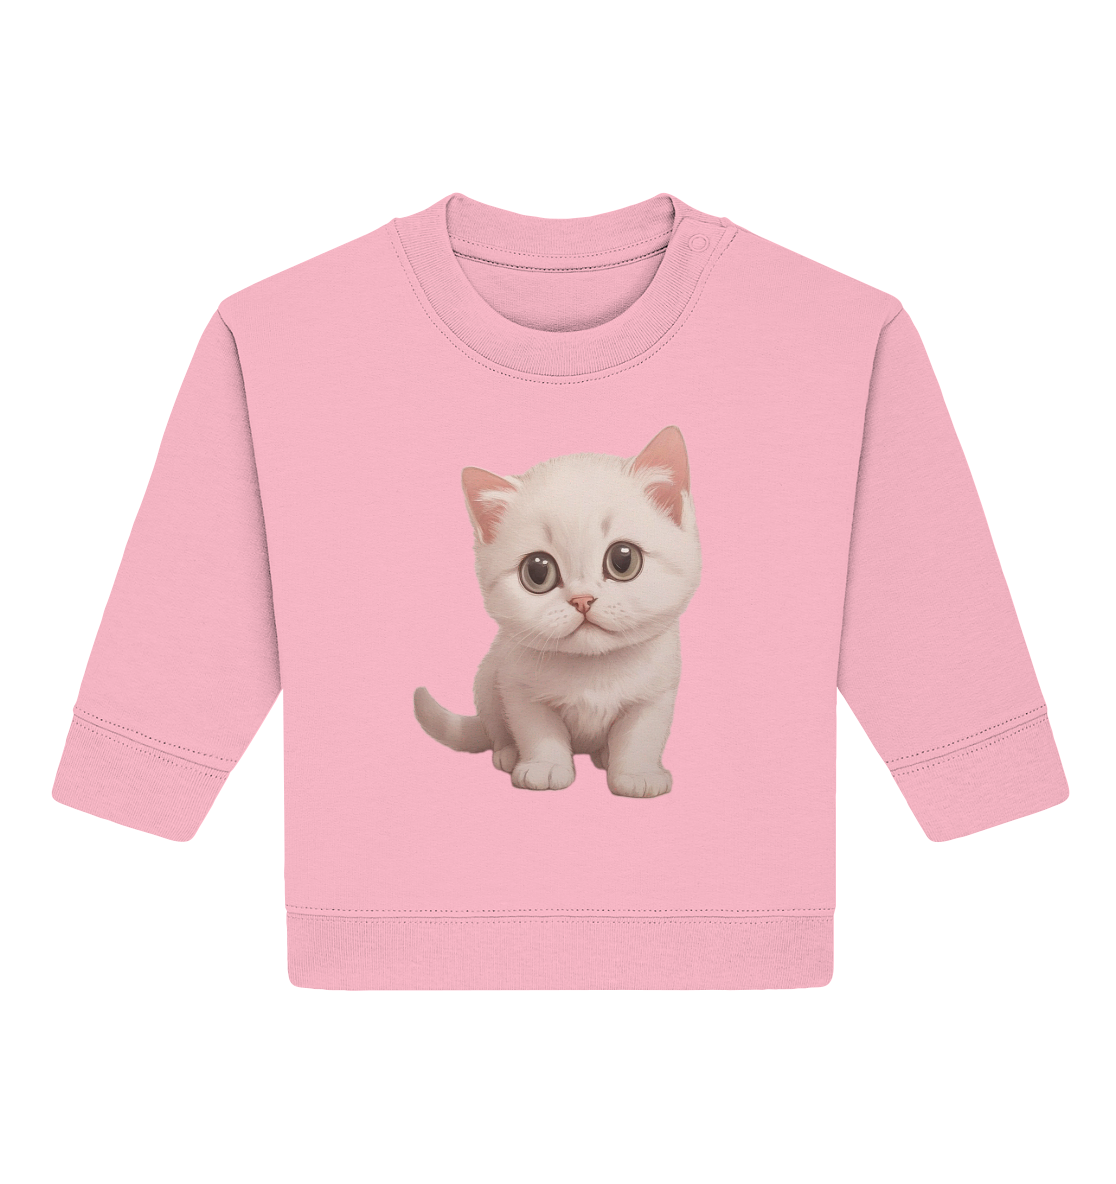 Kleine Katze - Design  Munich Palms - Baby Organic Sweatshirt